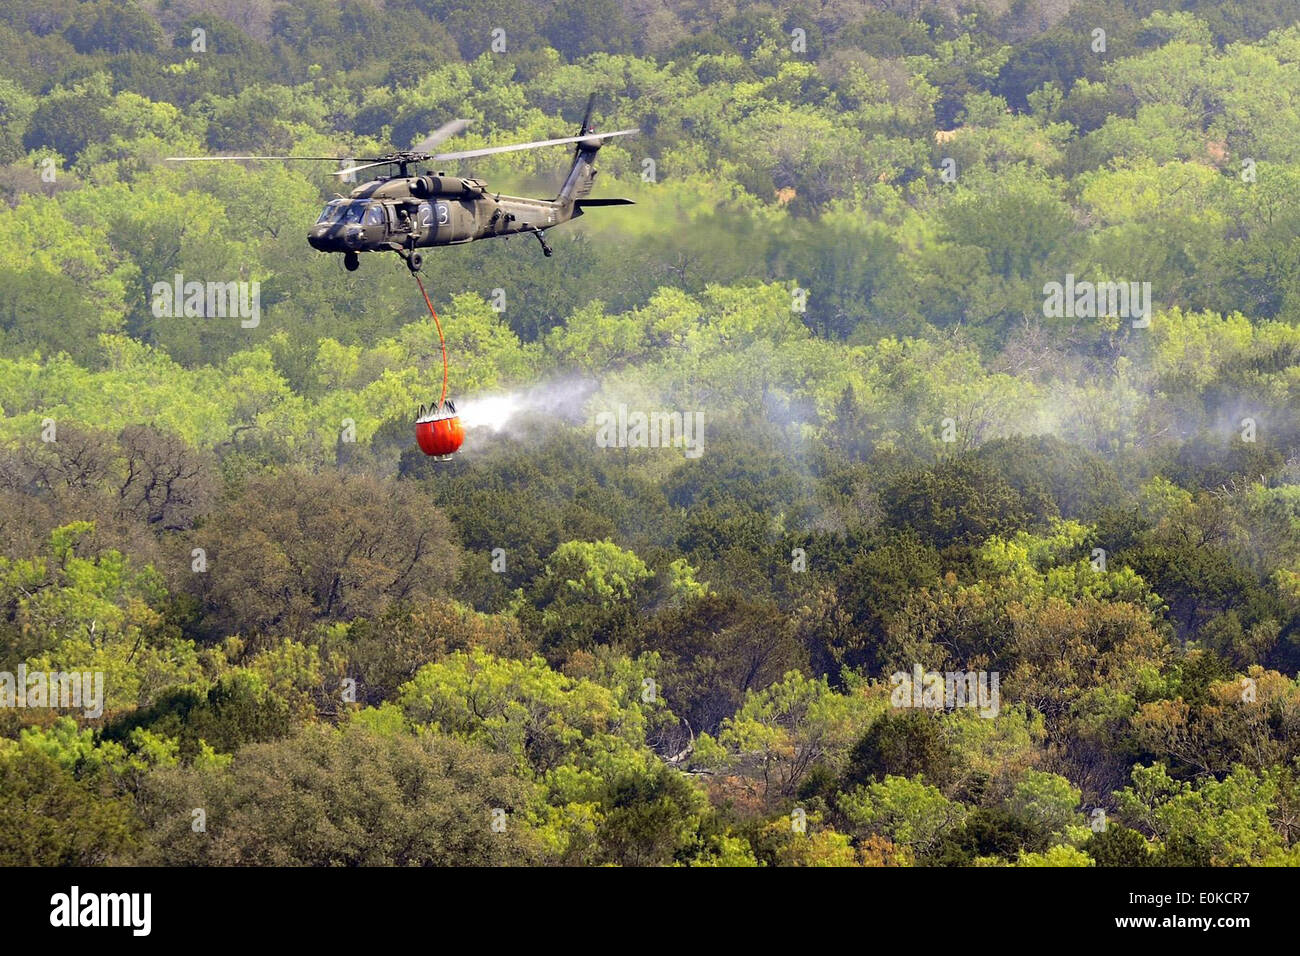 La Garde nationale du Texas UH-60 Black Hawk répondre à contribuer à la lutte contre les incendies de forêt au nord du Texas. Les hélicoptères nous avons lancé à partir de t Banque D'Images